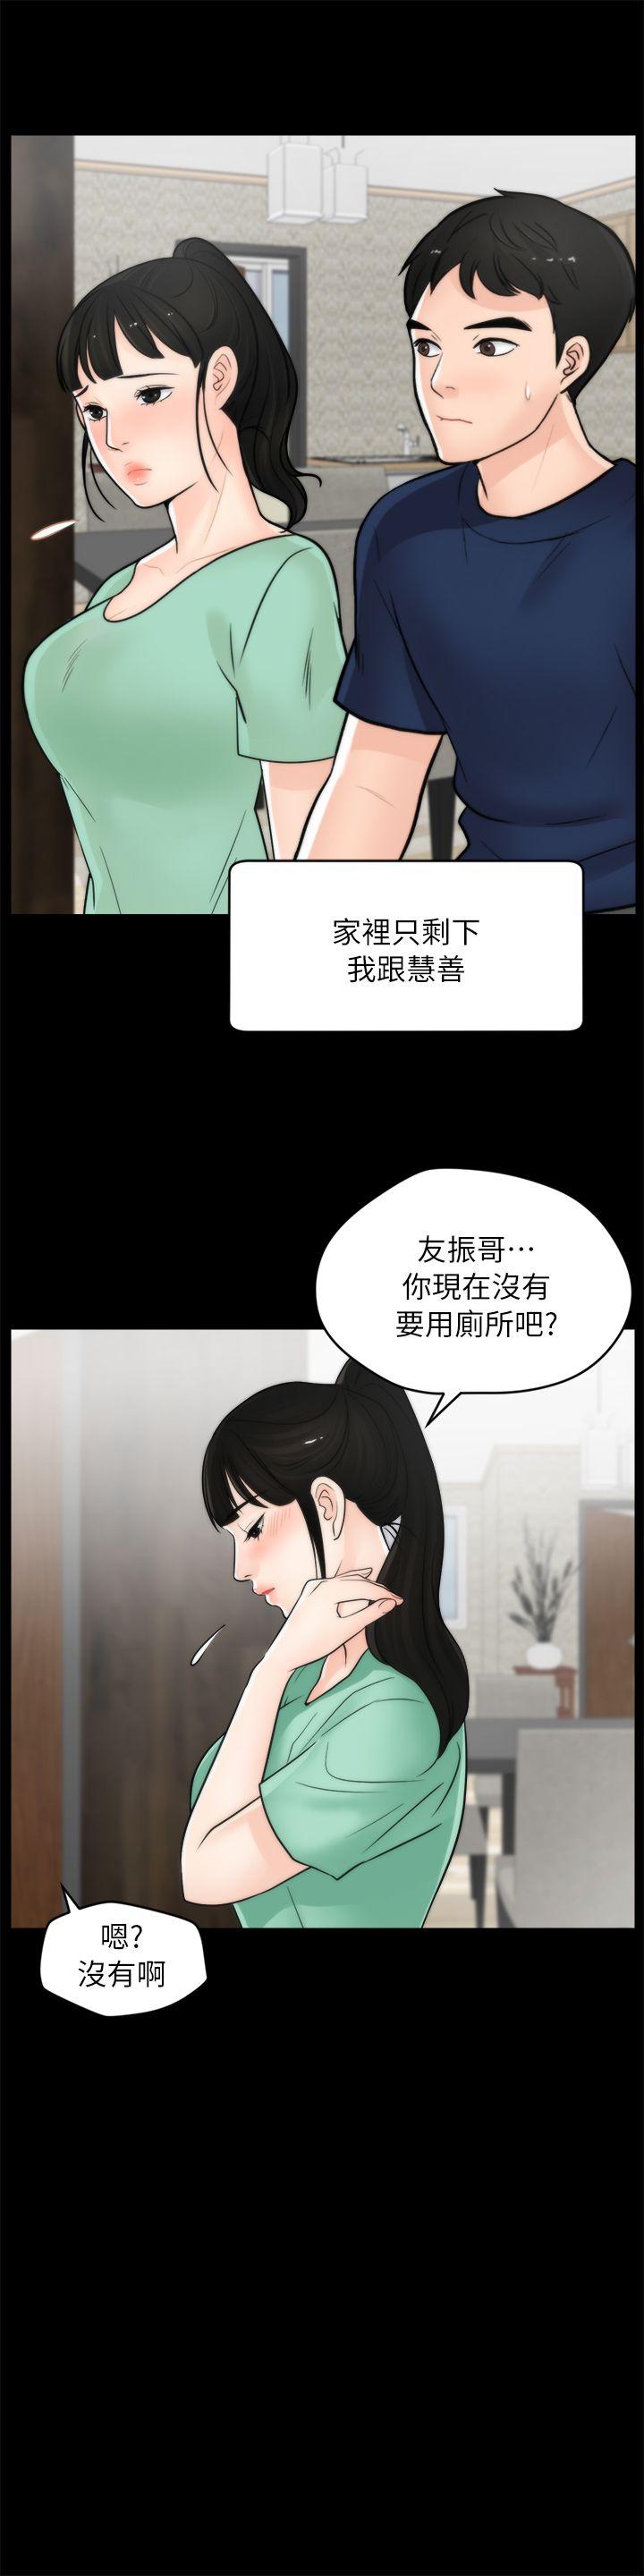 韩国污漫画 偷偷愛 第18话-小女儿 19